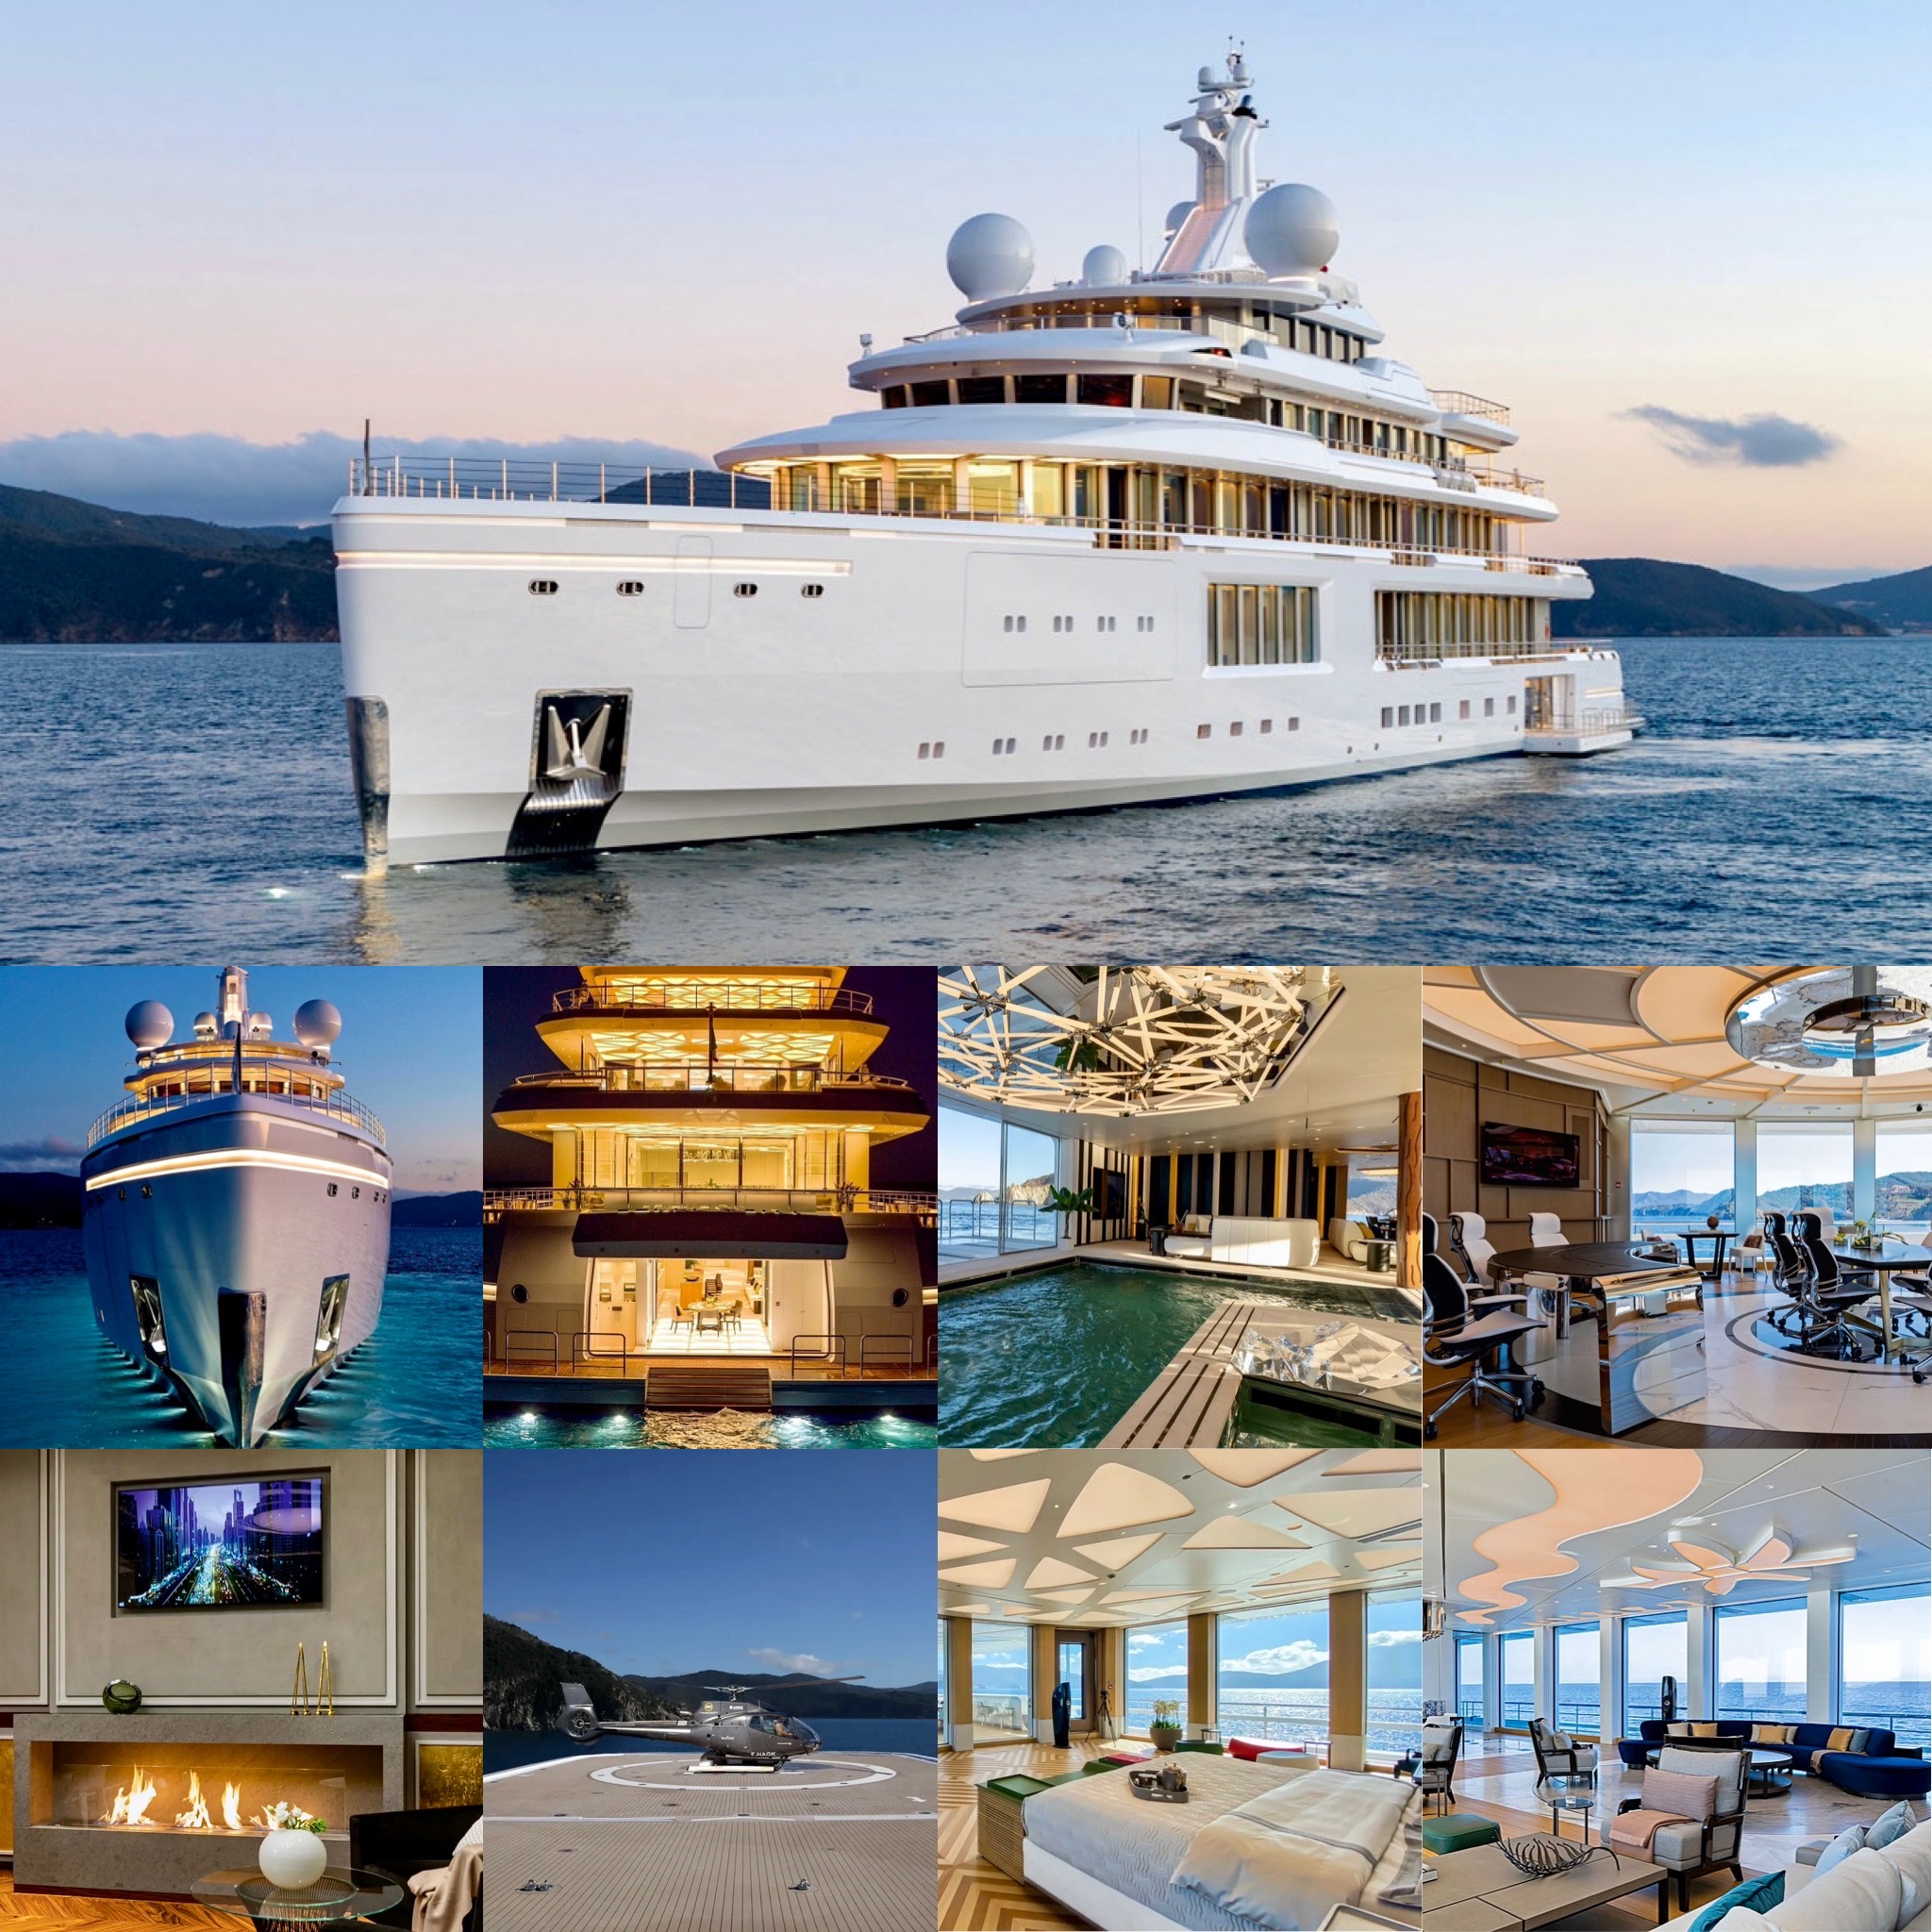 The $275 million, 107.6 metre Luminosity Superyacht by Benetti